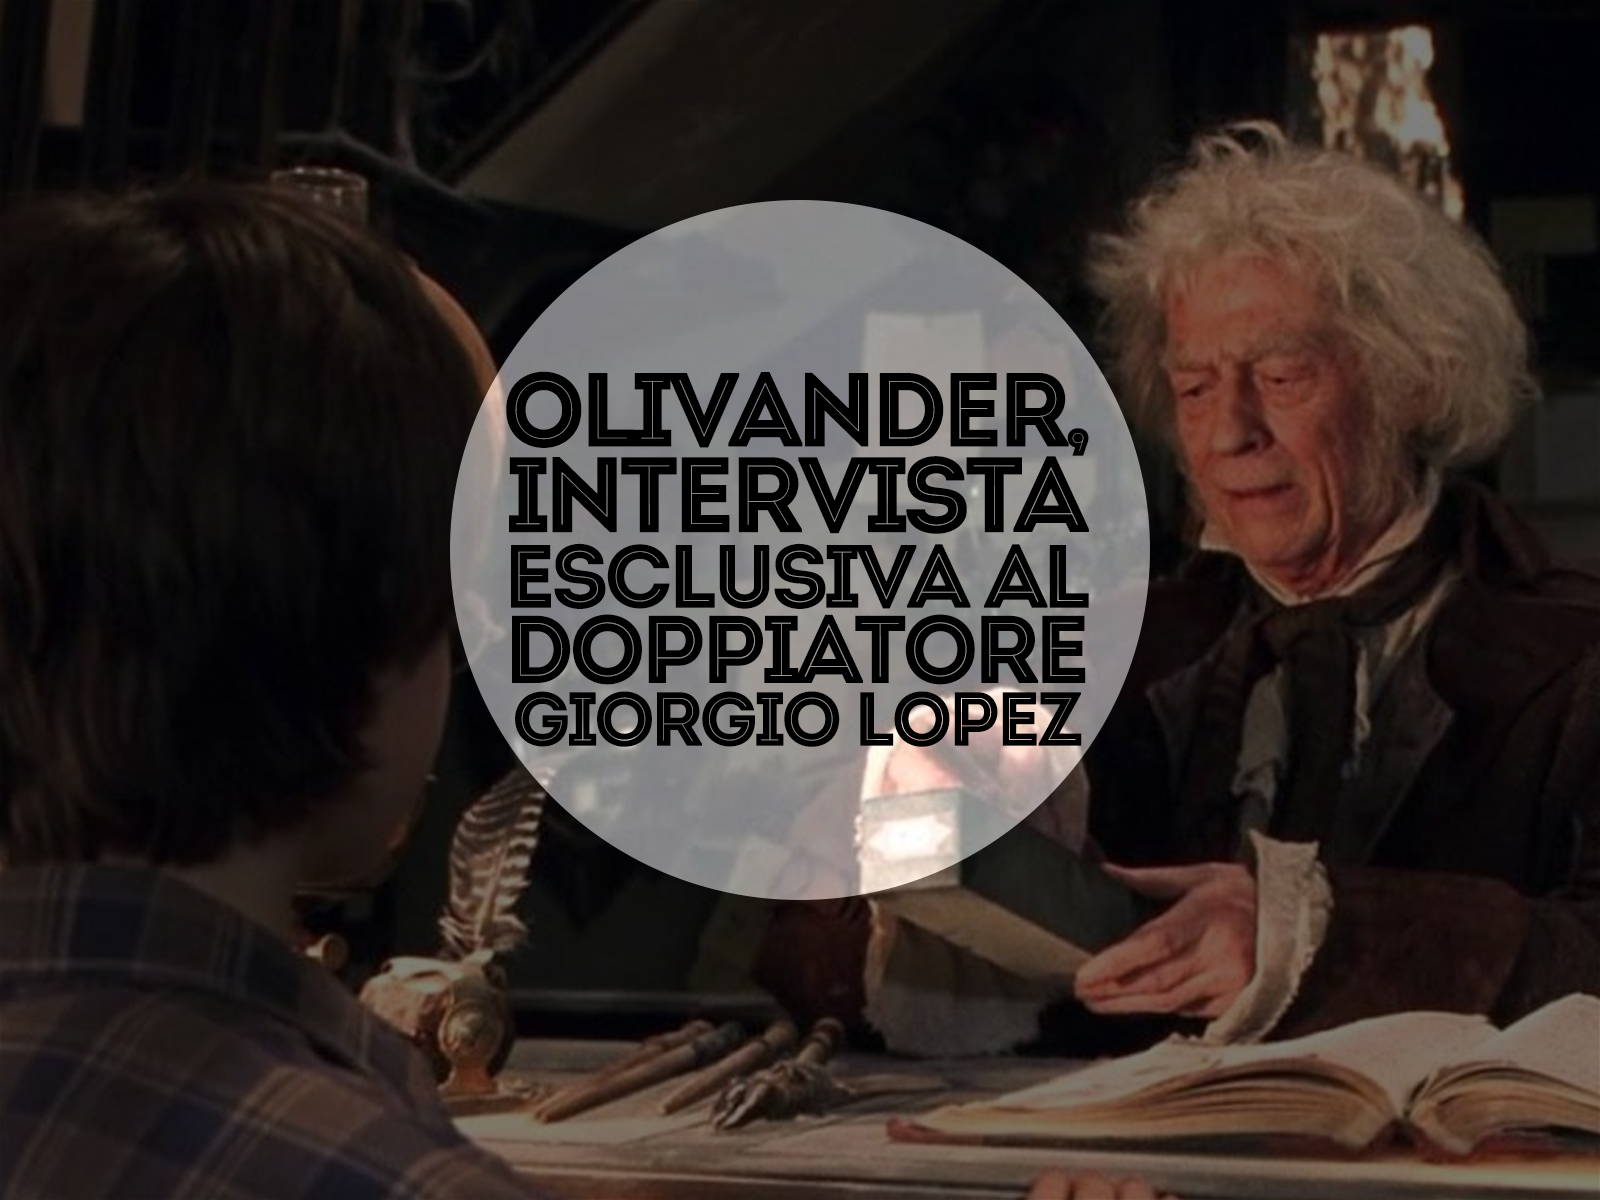 Olivander, intervista esclusiva al doppiatore Giorgio Lopez